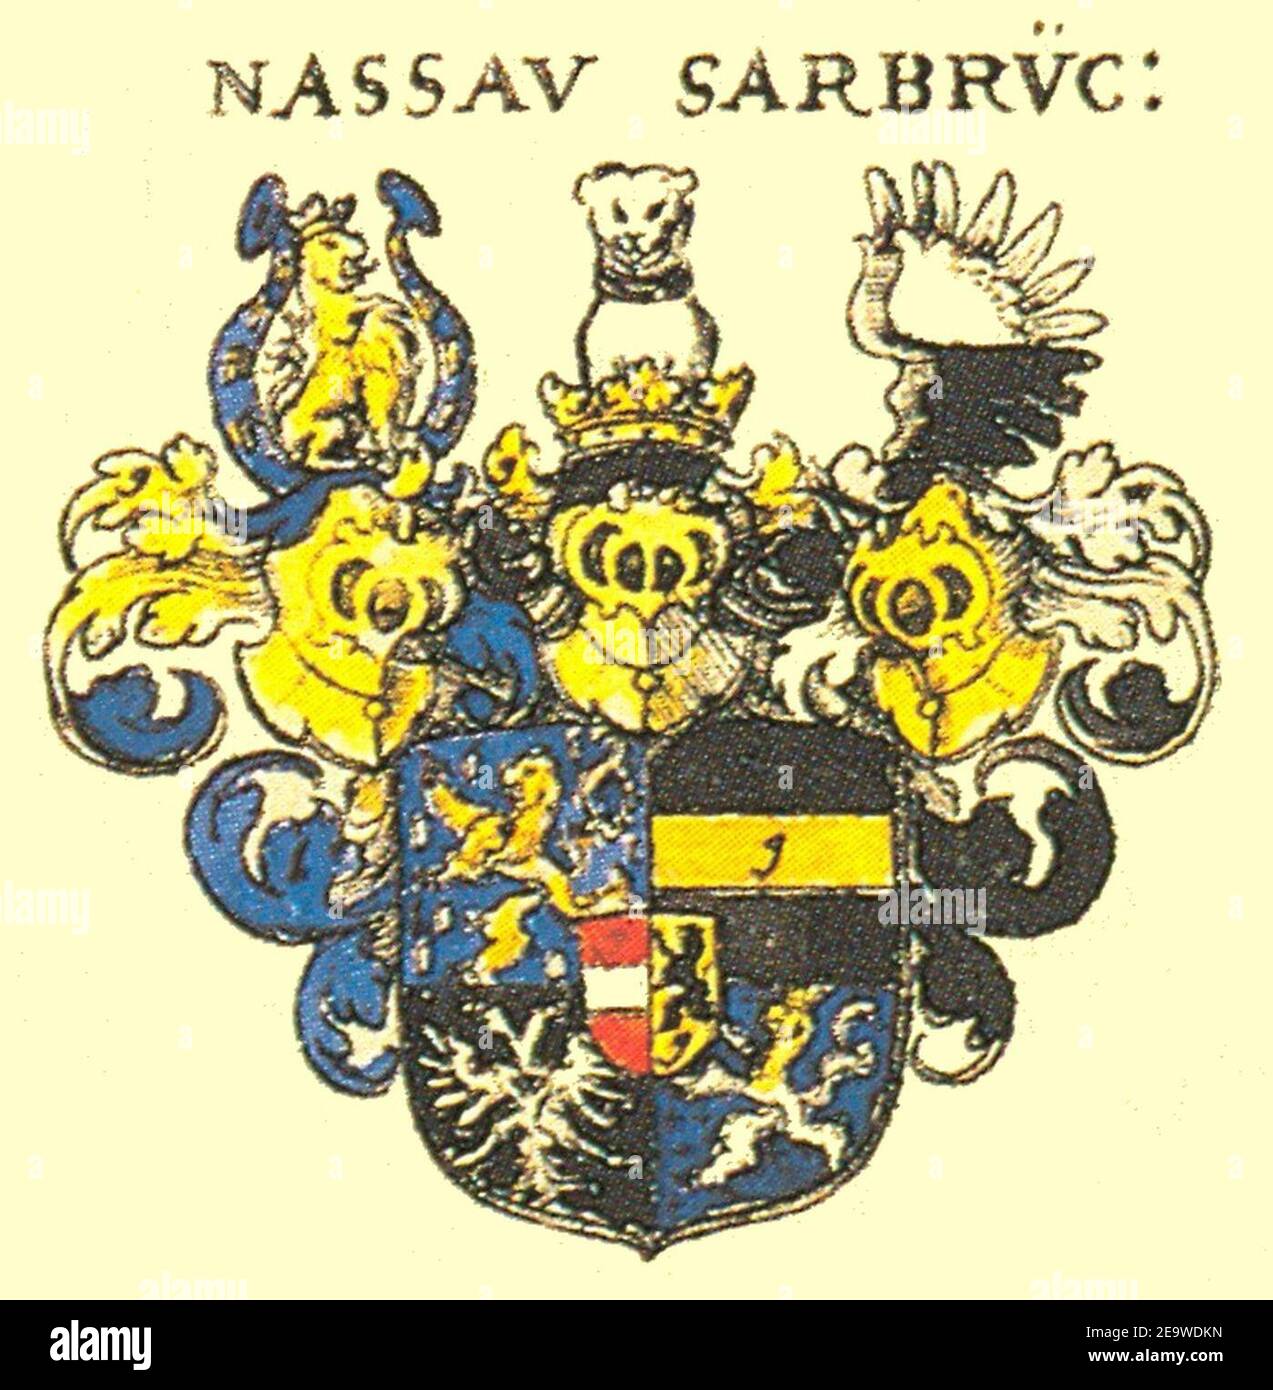 Nassau Saarbrücken Siebmacher014 - Grafen. Stockfoto